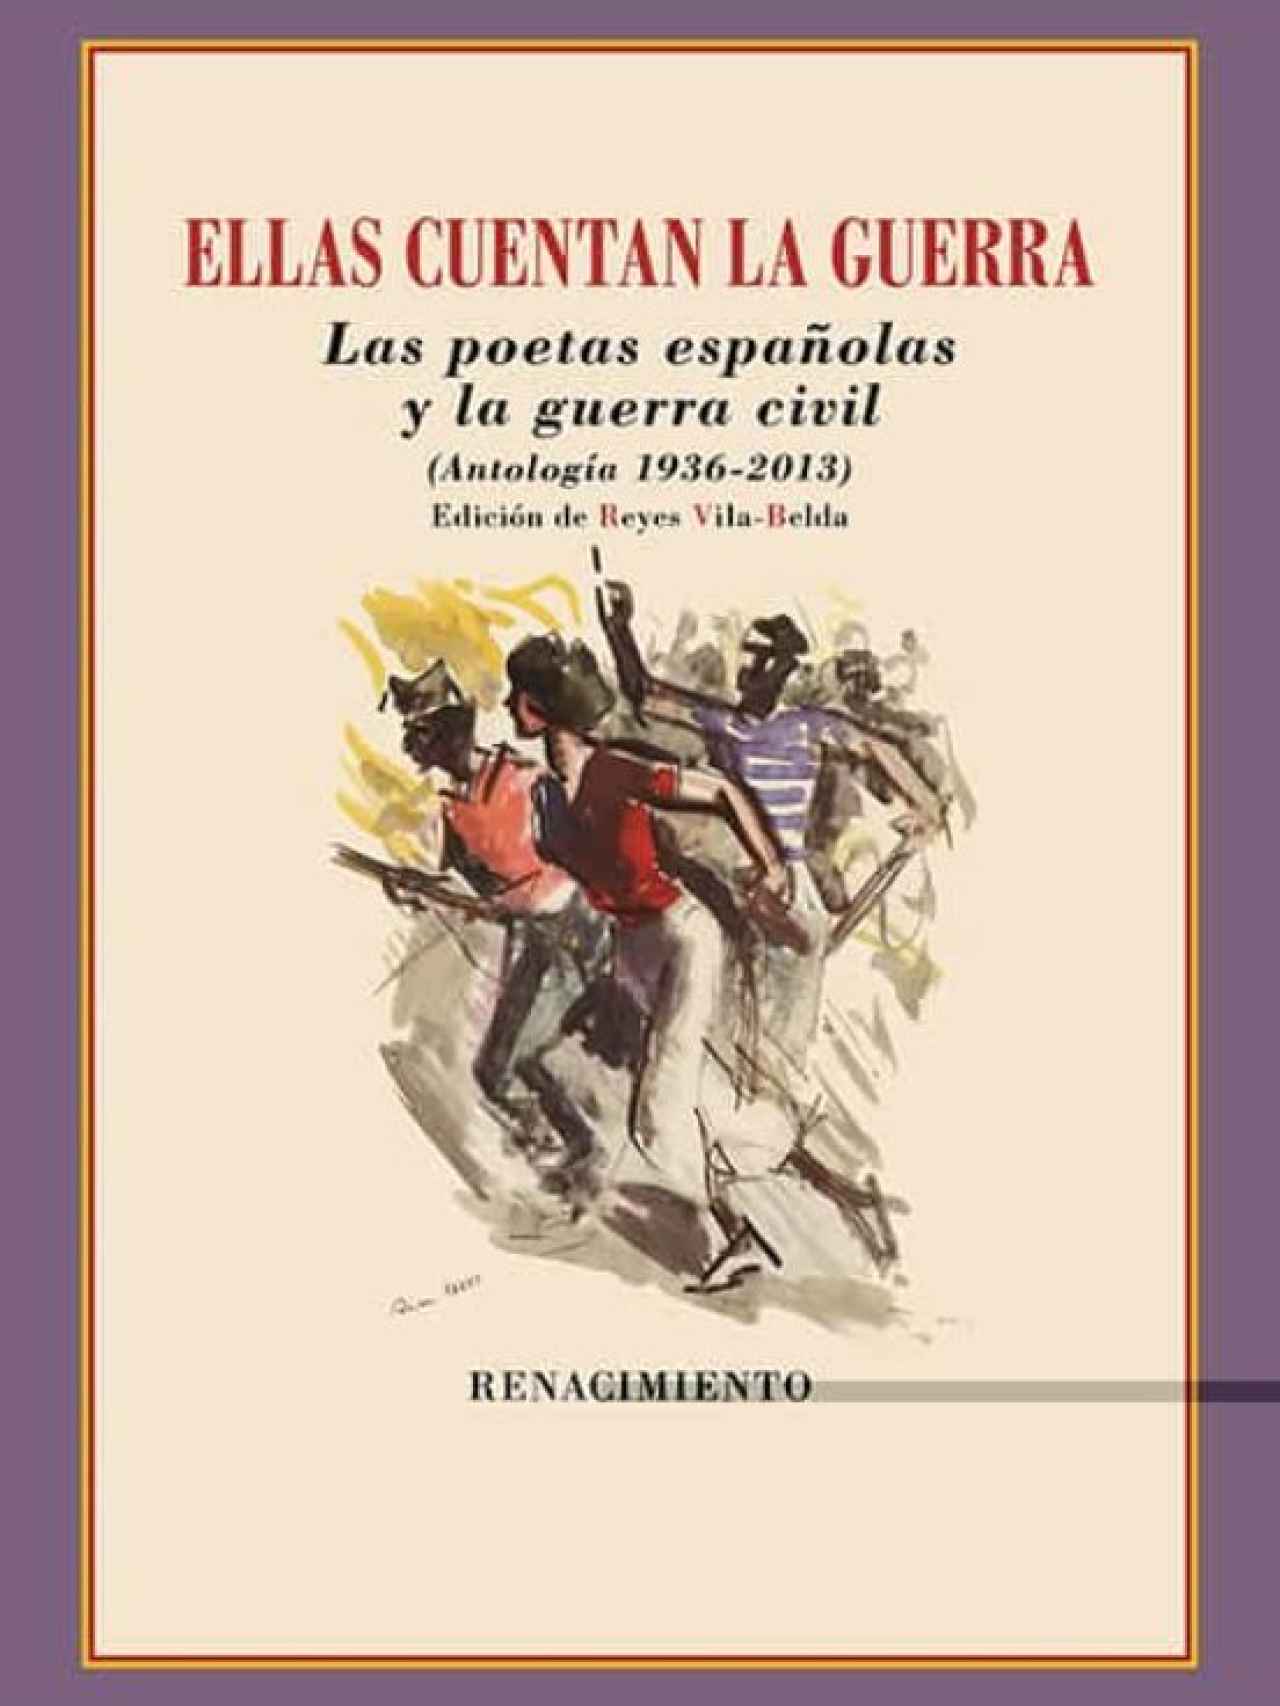 Portada del libro 'Ellas cuentan la guerra. Las poetas españolas y la guerra civil'